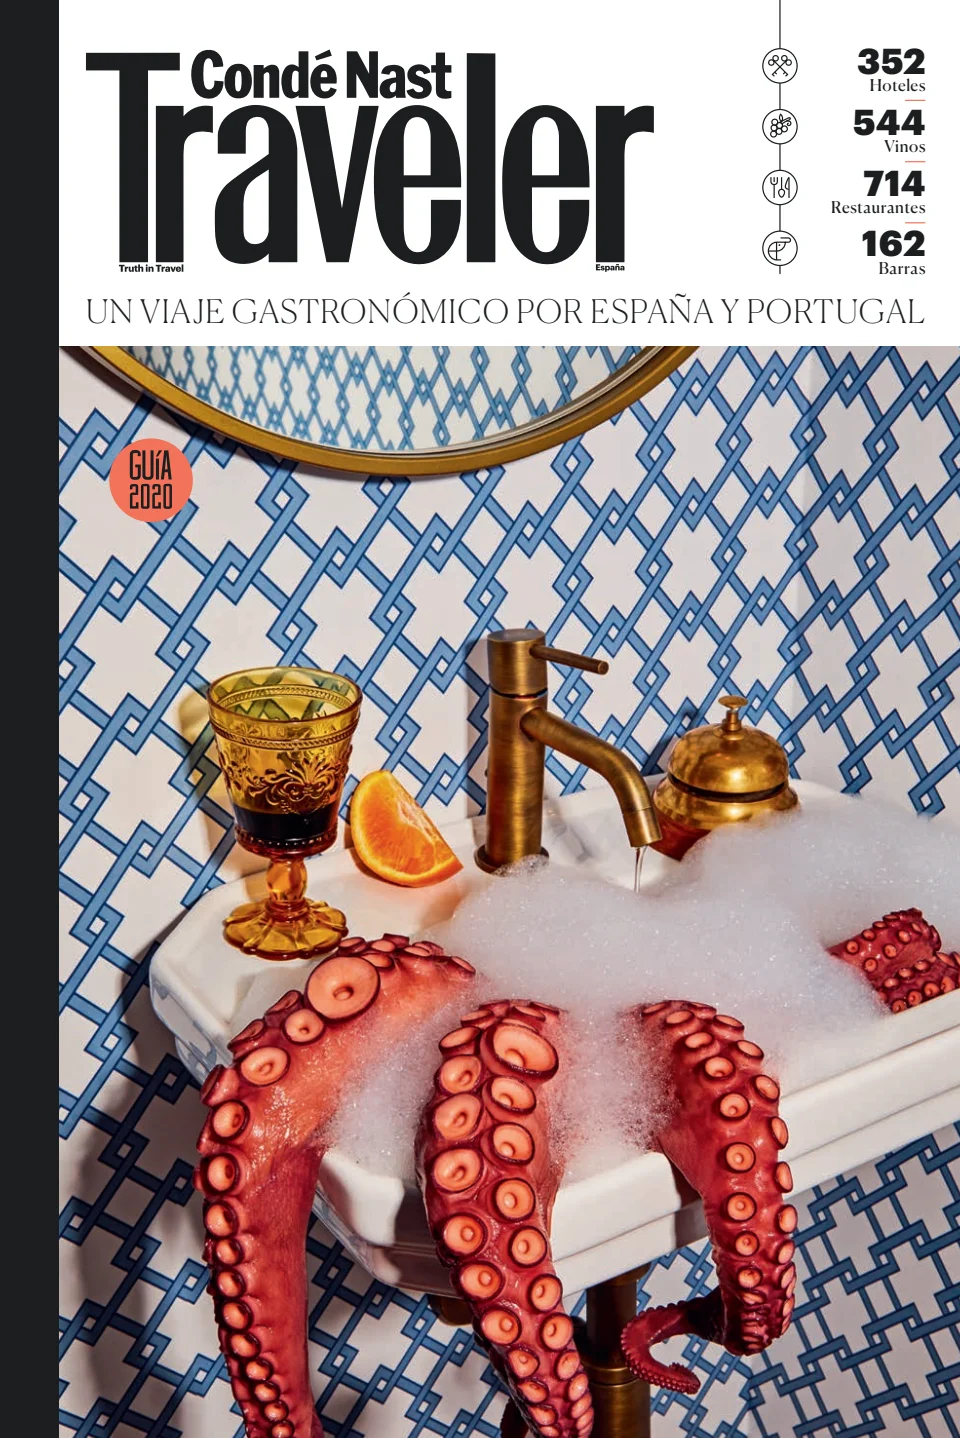 Condé Nast Traveler (Spain): Guía de Gastronomía 2020 de Hoteles, Restaurantes y Vinos